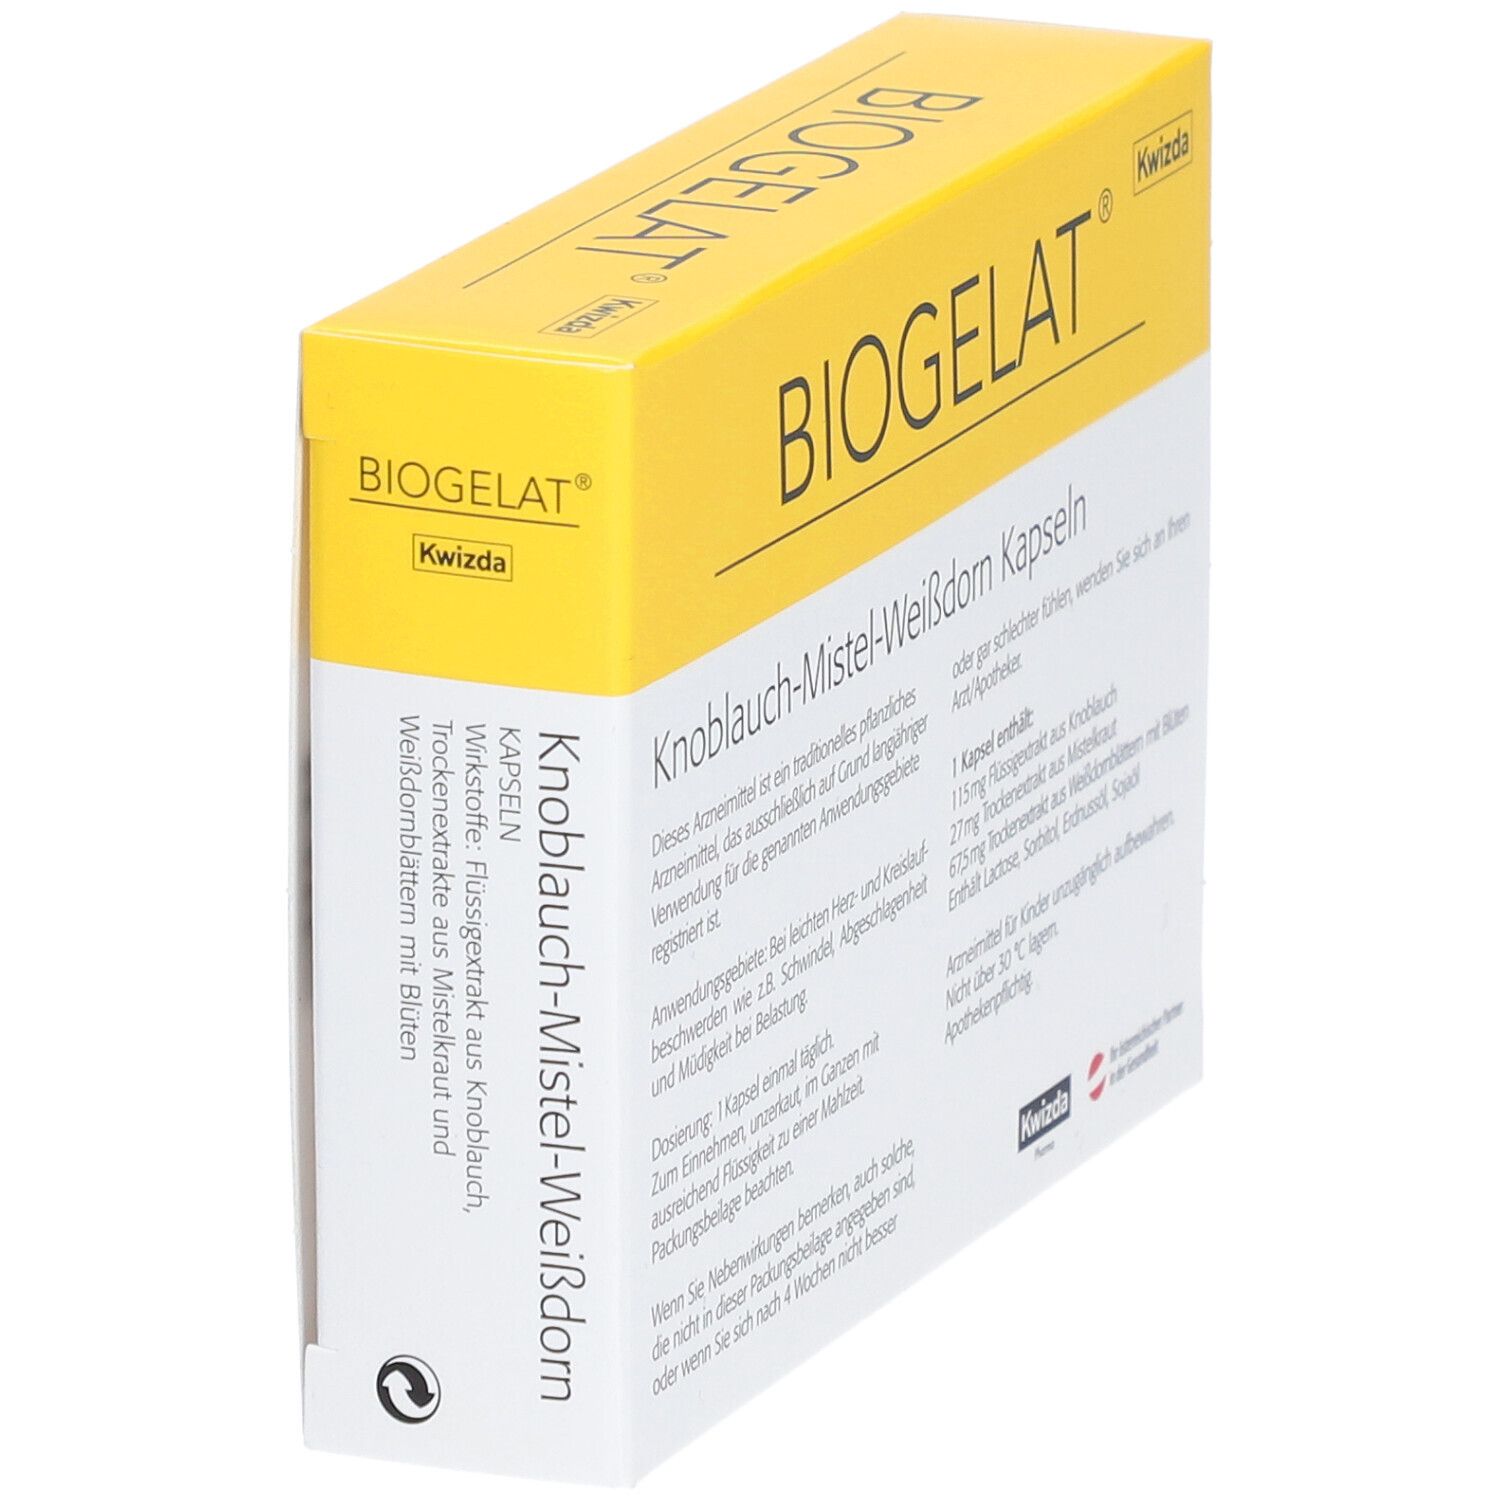 BIOGELAT® Knoblauch-Mistel-Weißdorn Kapseln